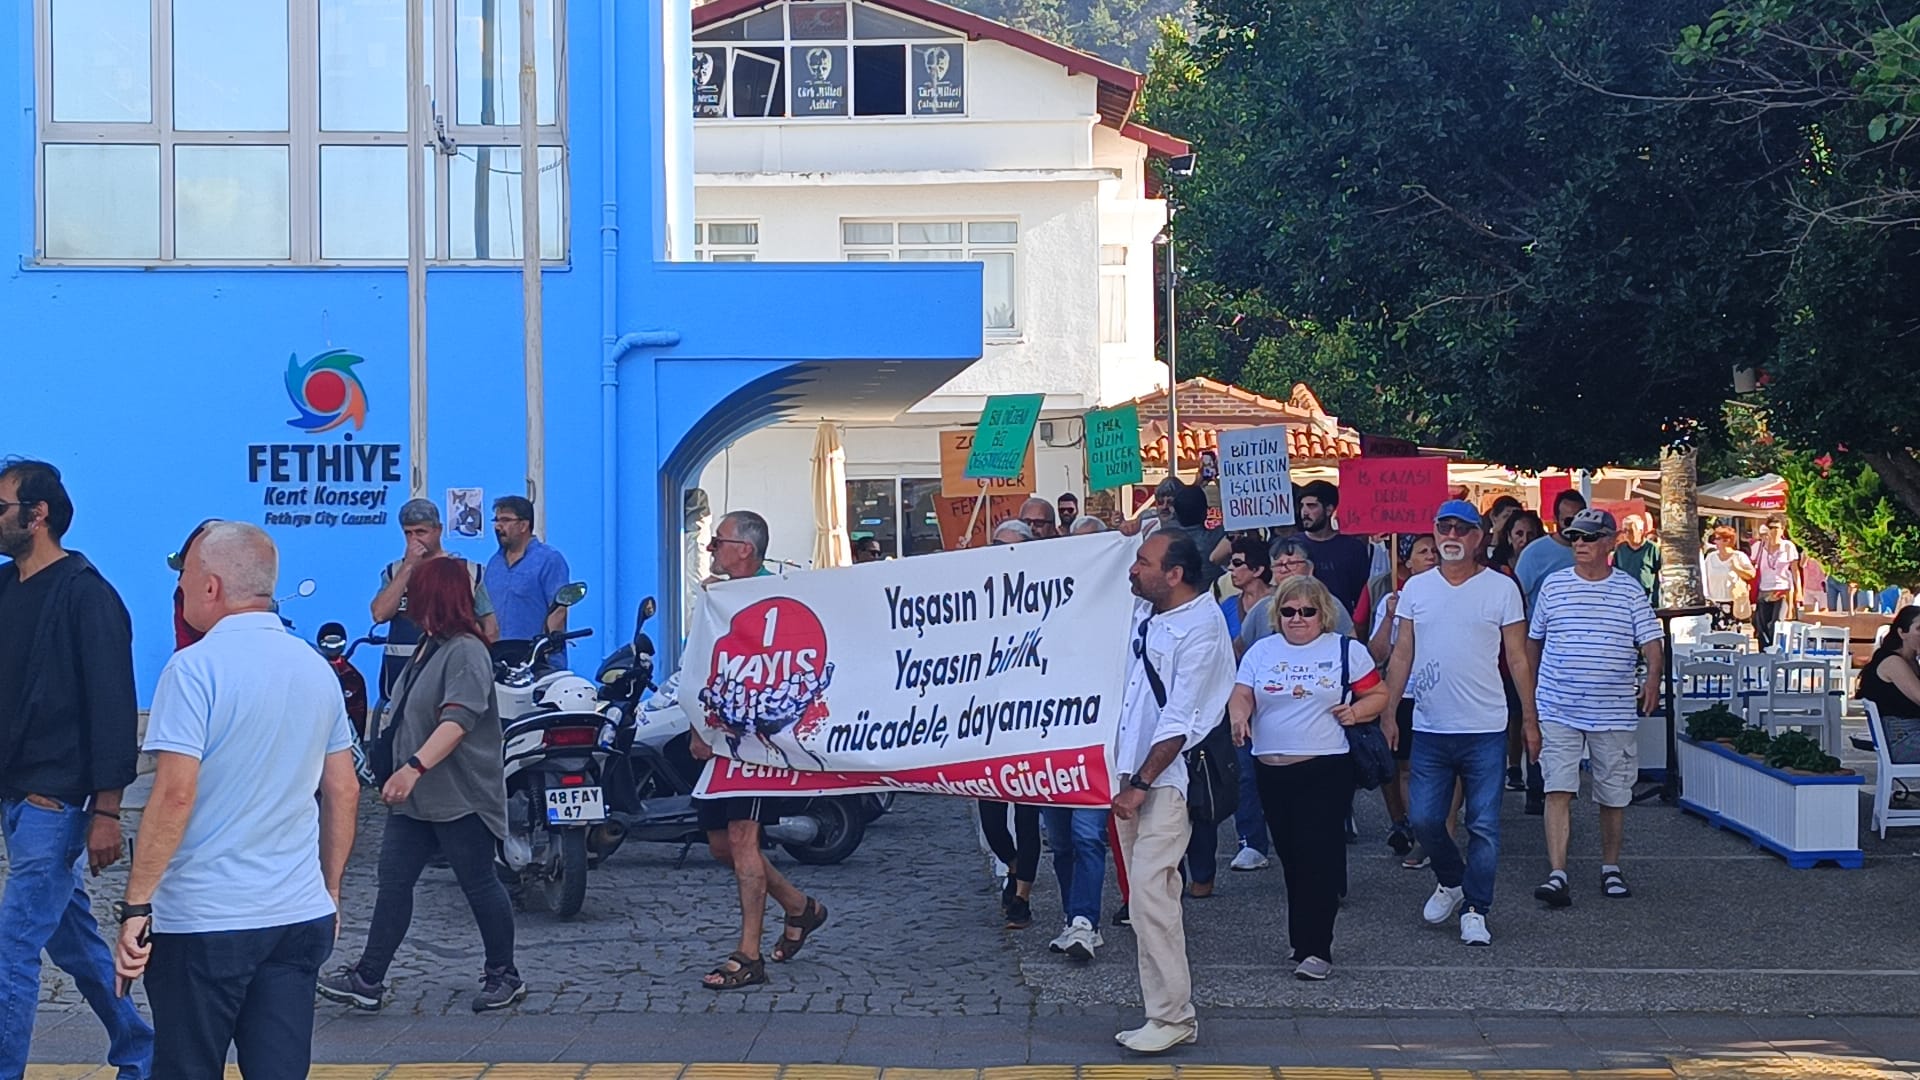 Fethiye’de 1 Mayıs Yürüyüşü Olaysız Geçti (2)